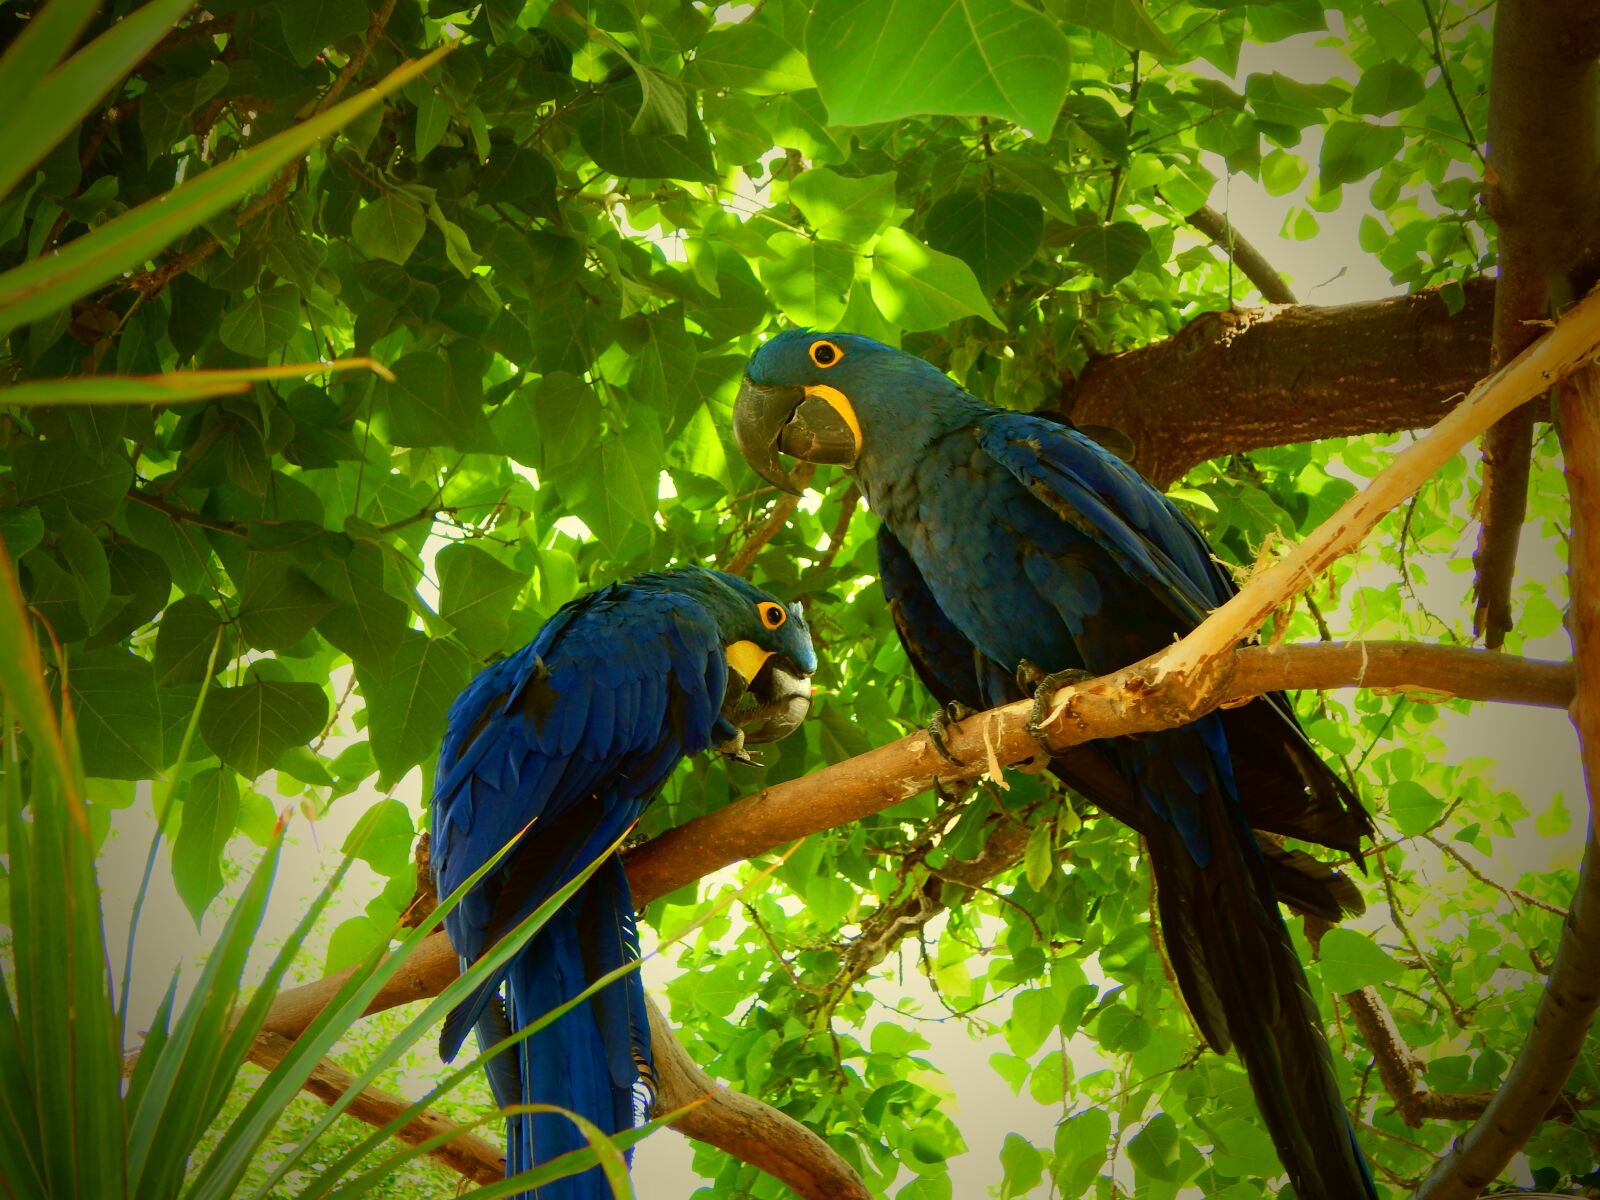 Nikon Coolpix L830 sample photo. Blue parrots, birds, tropical photography